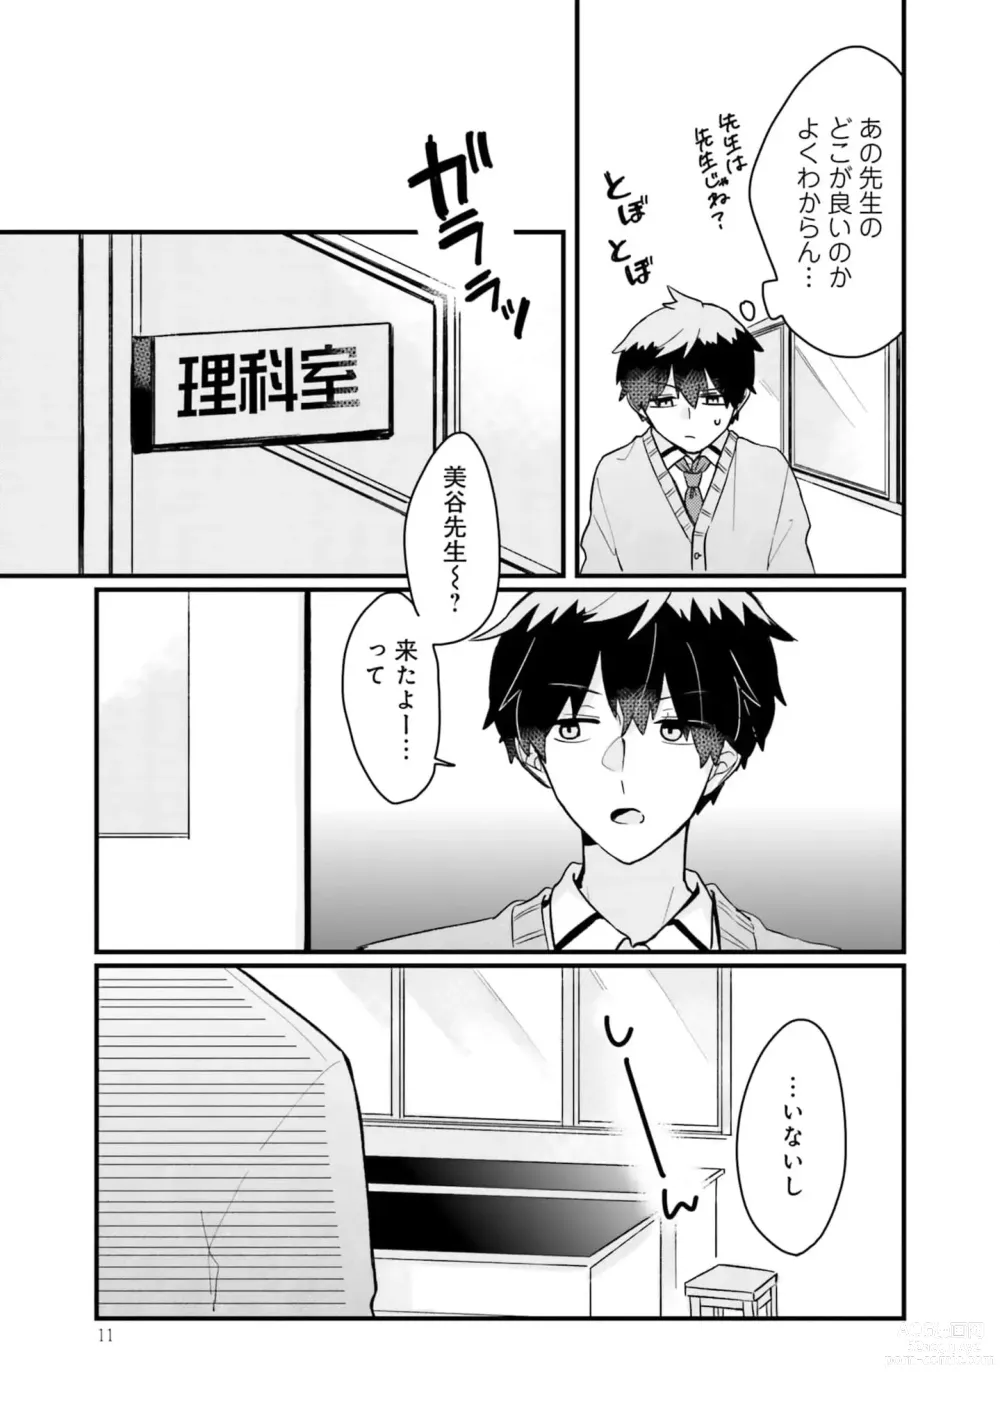 Page 11 of manga Shishunki ni wa Me no Doku desu